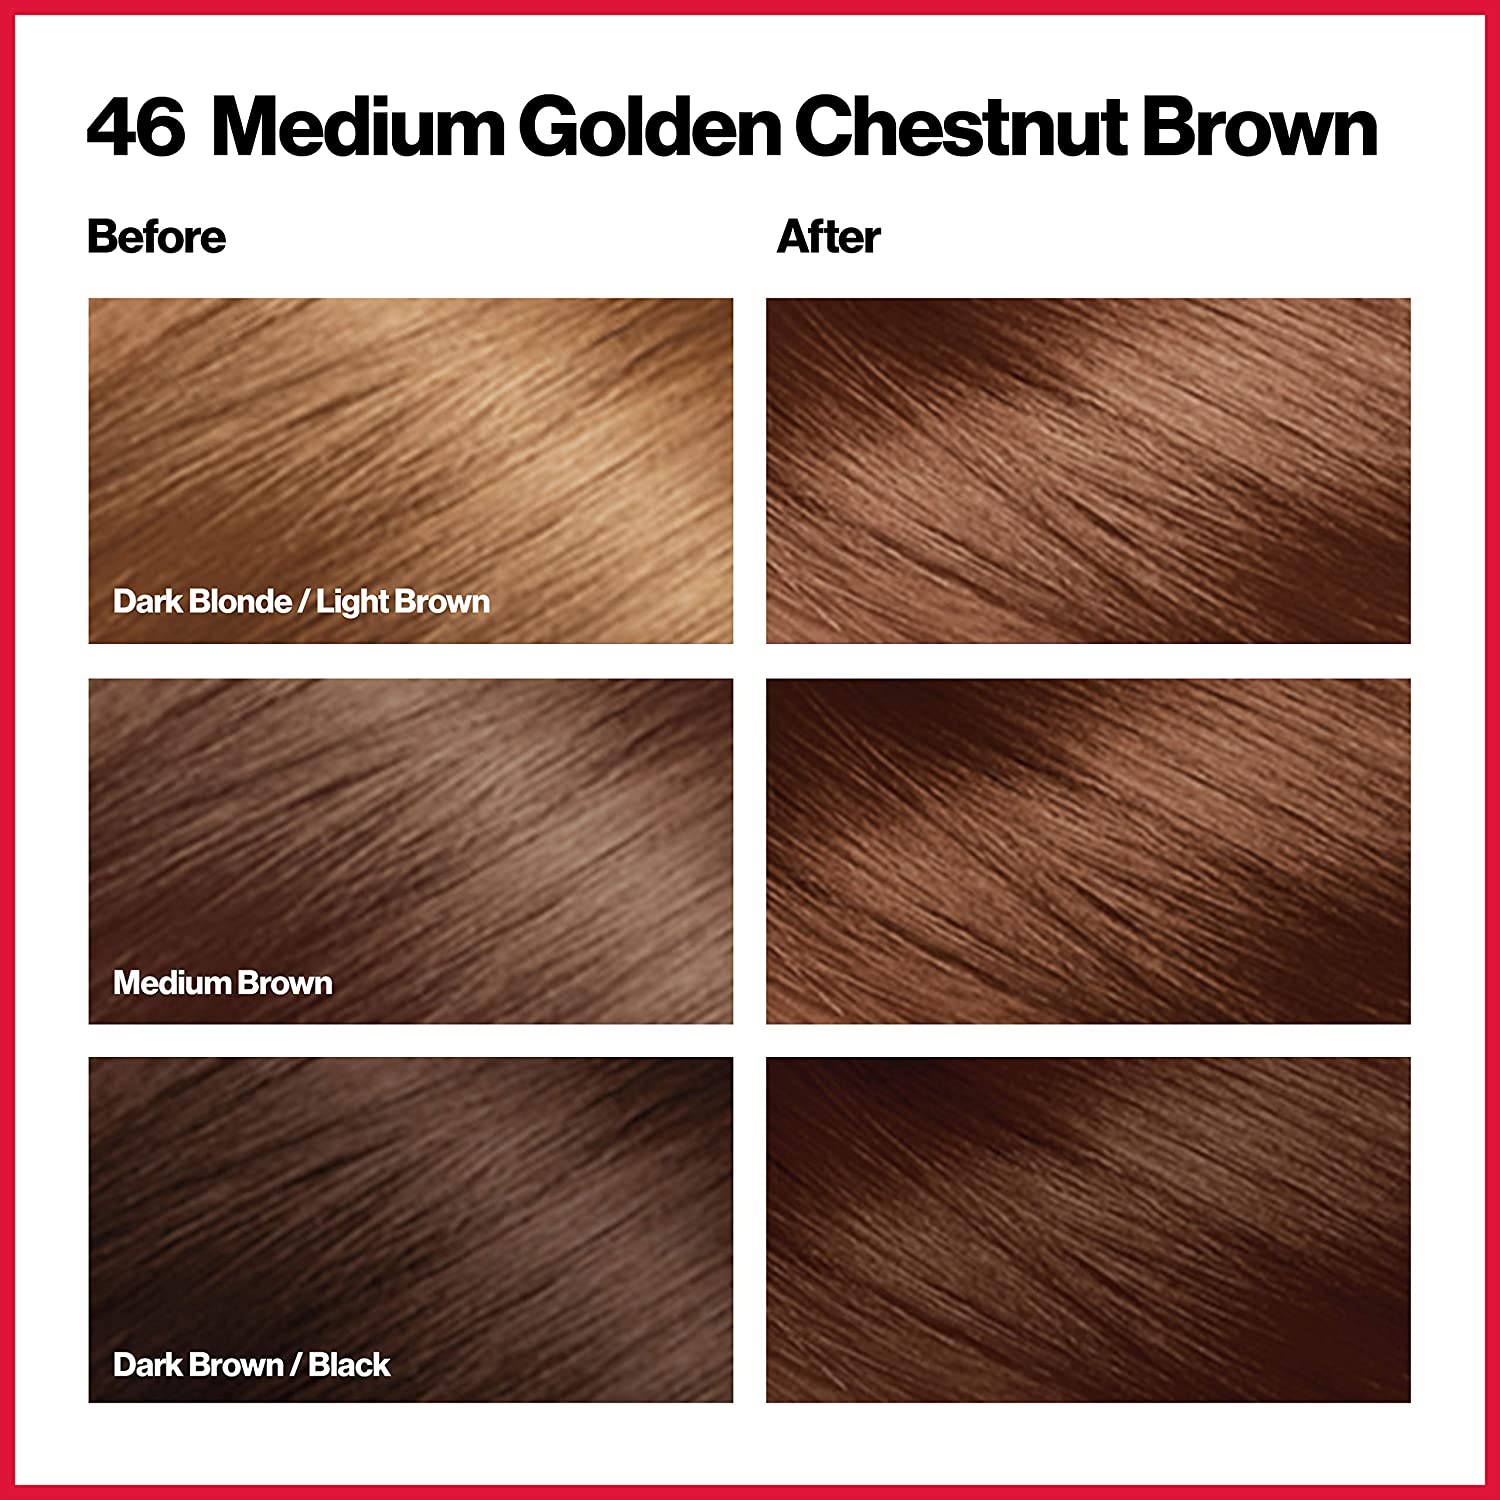 Medium Golden Chestnut Brown